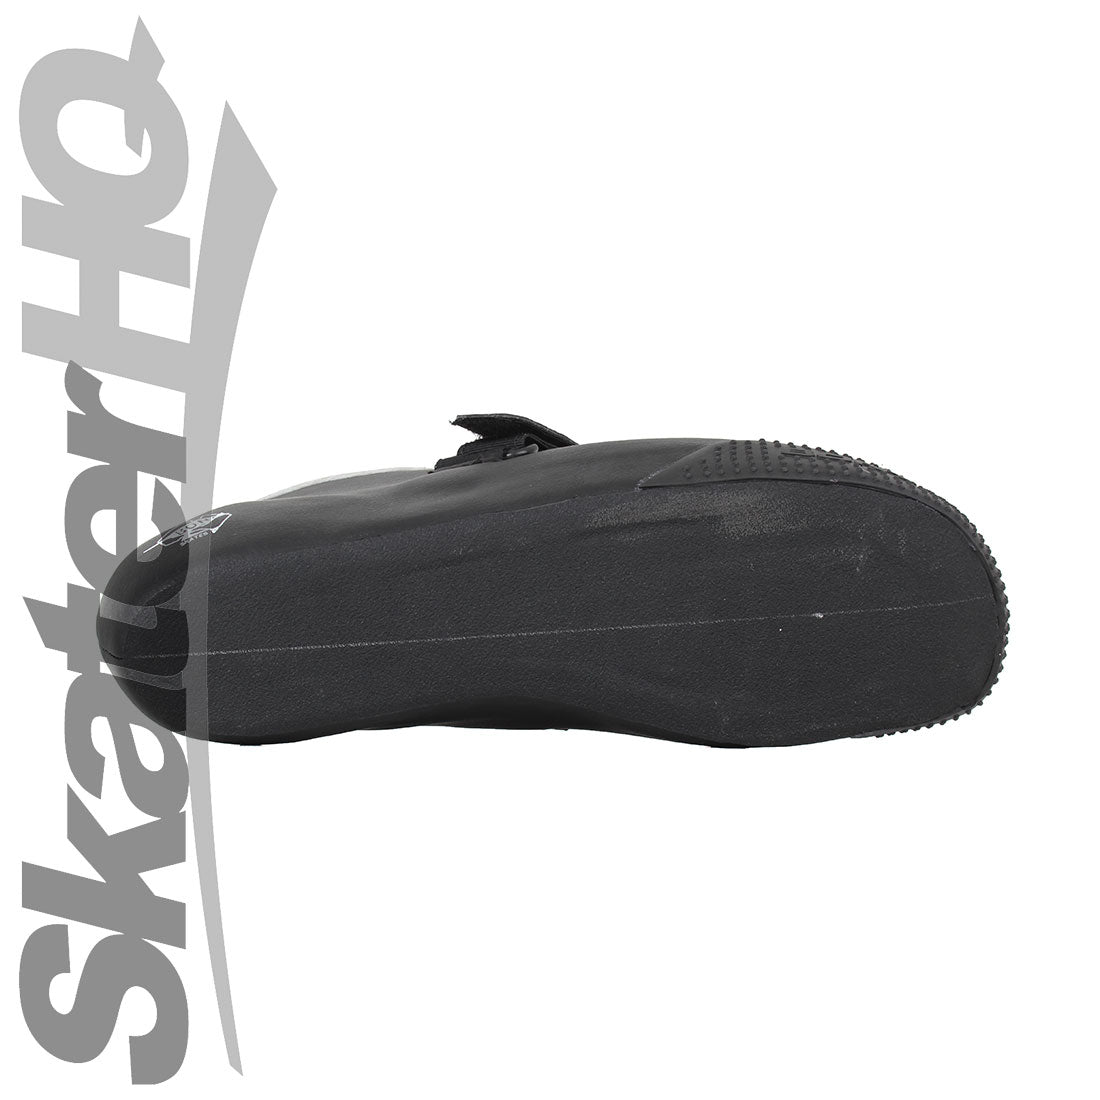 Bont Hybrid V2 Microfibre Boot - Black/White Roller Skate Boots